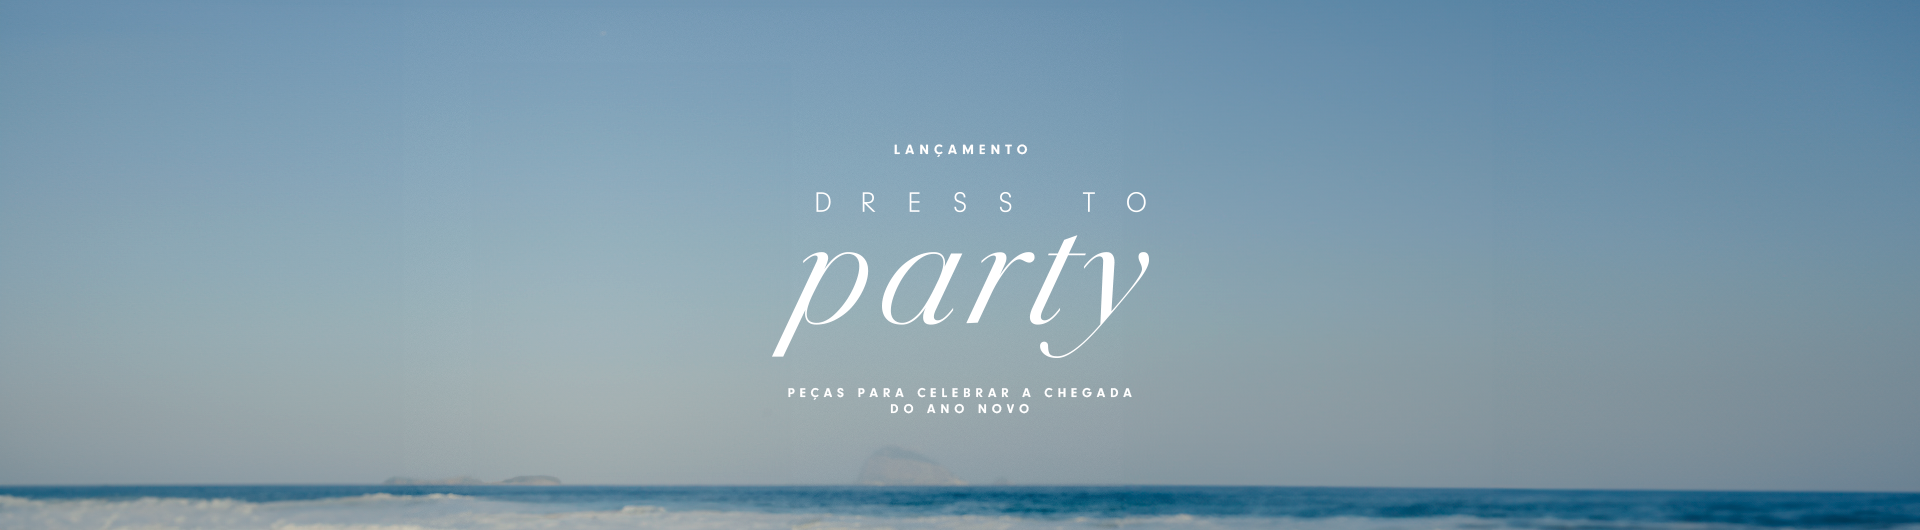 Linha FEsta Dress To - Dress to party